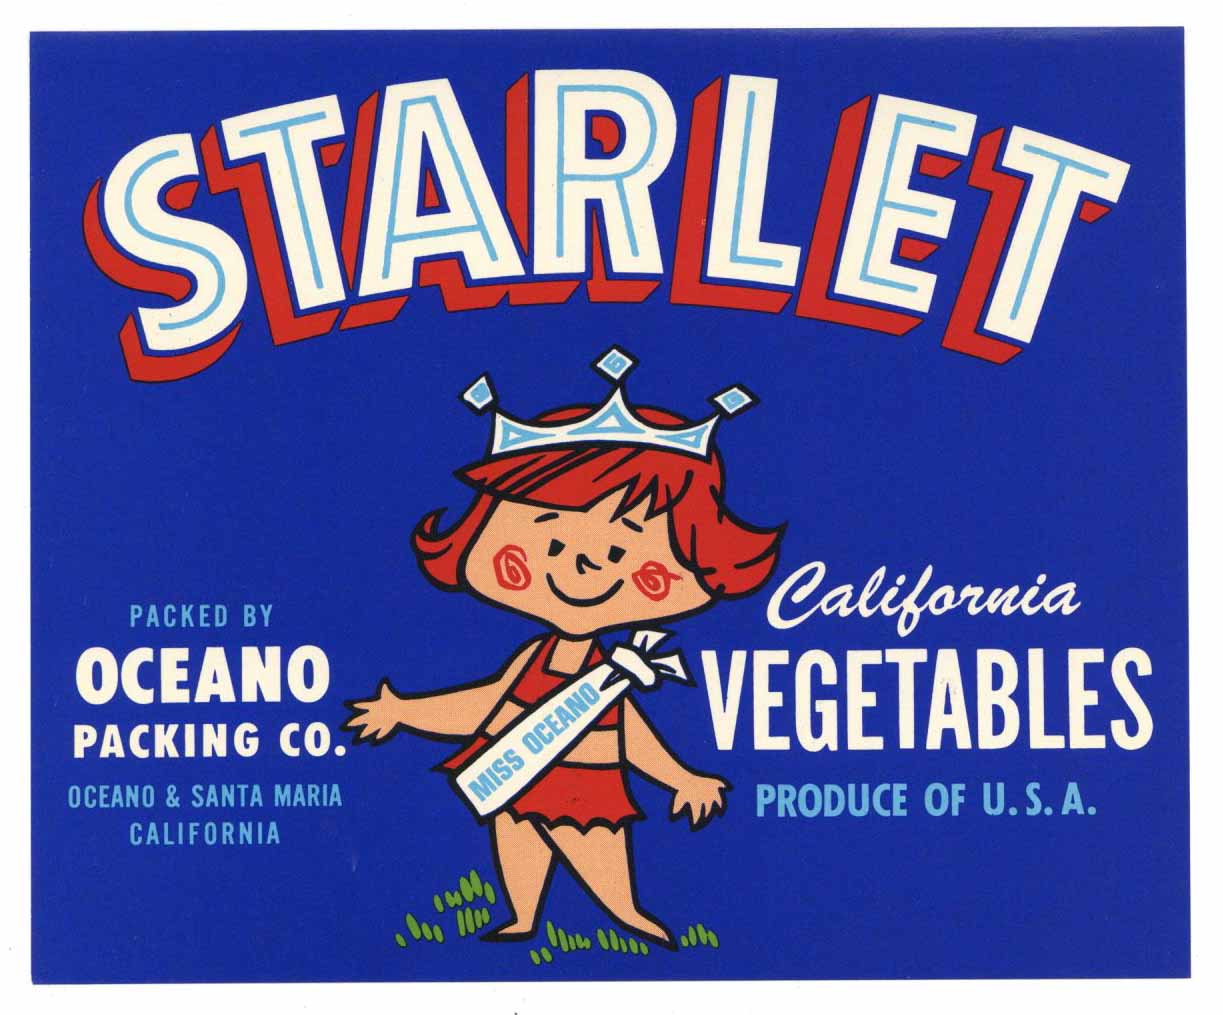 Starlet Brand Vintage Oceano Vegetable Crate Label, cartoon